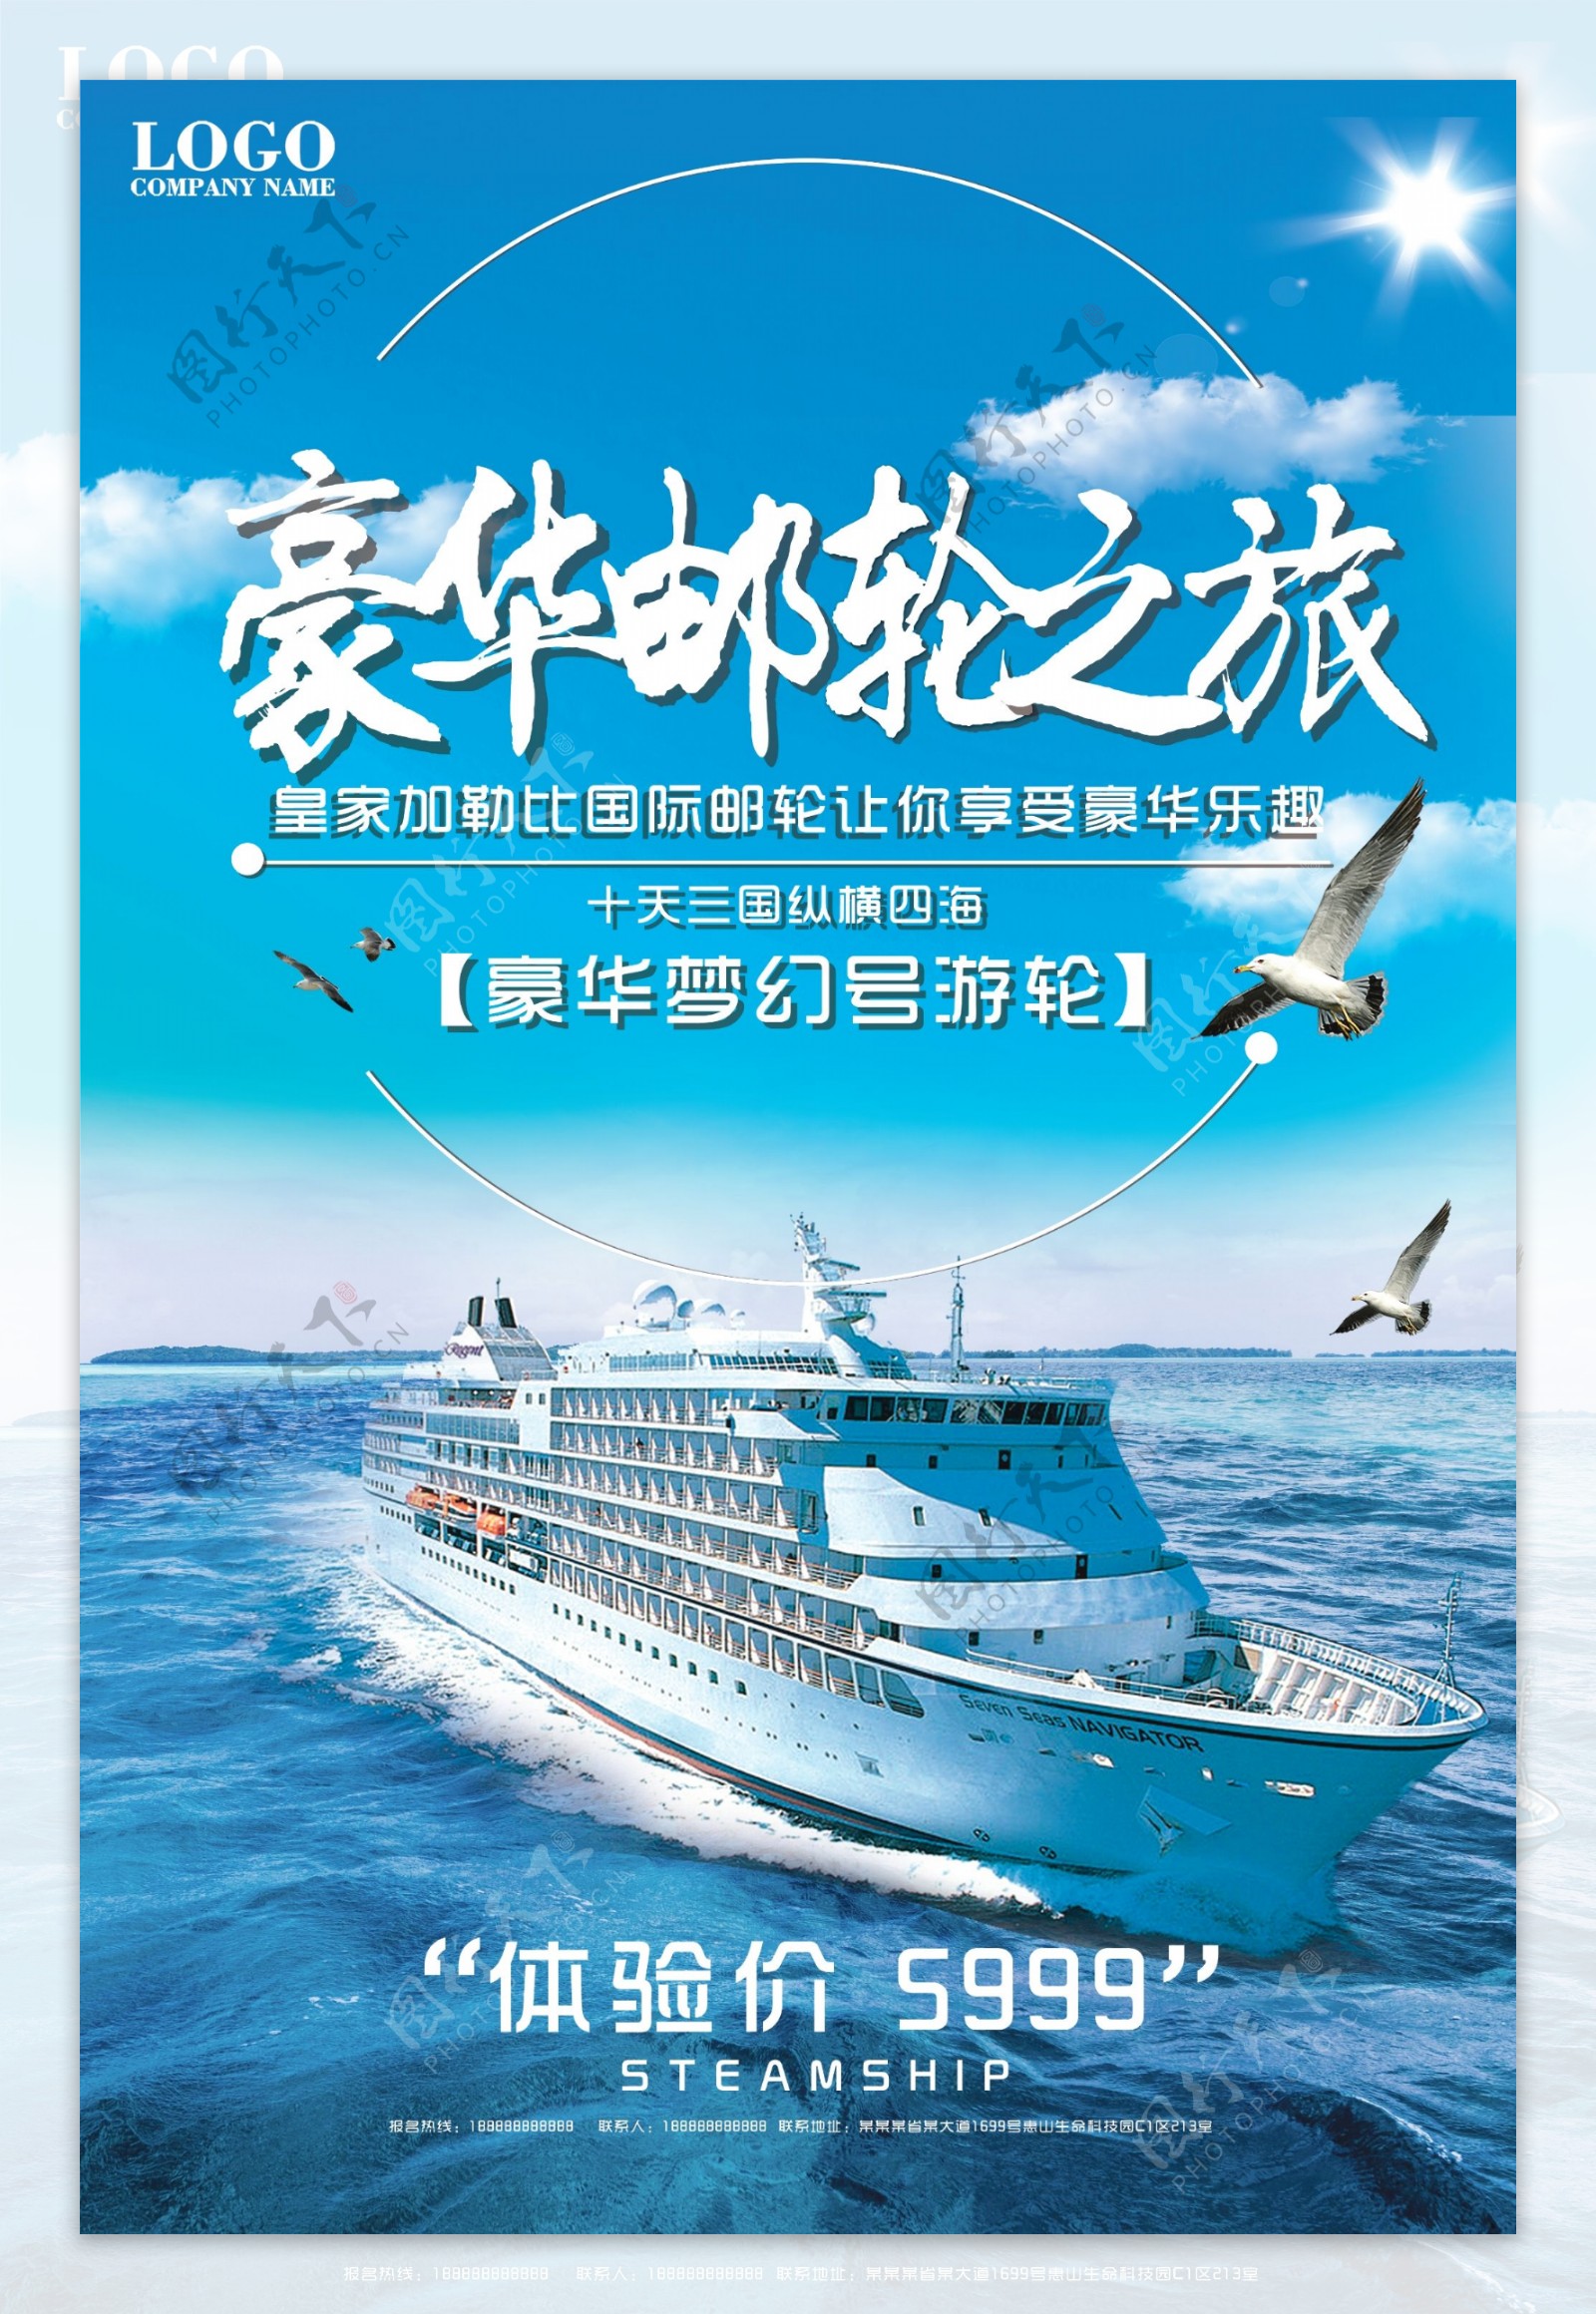 蓝色大气创意豪华游轮旅行海报设计